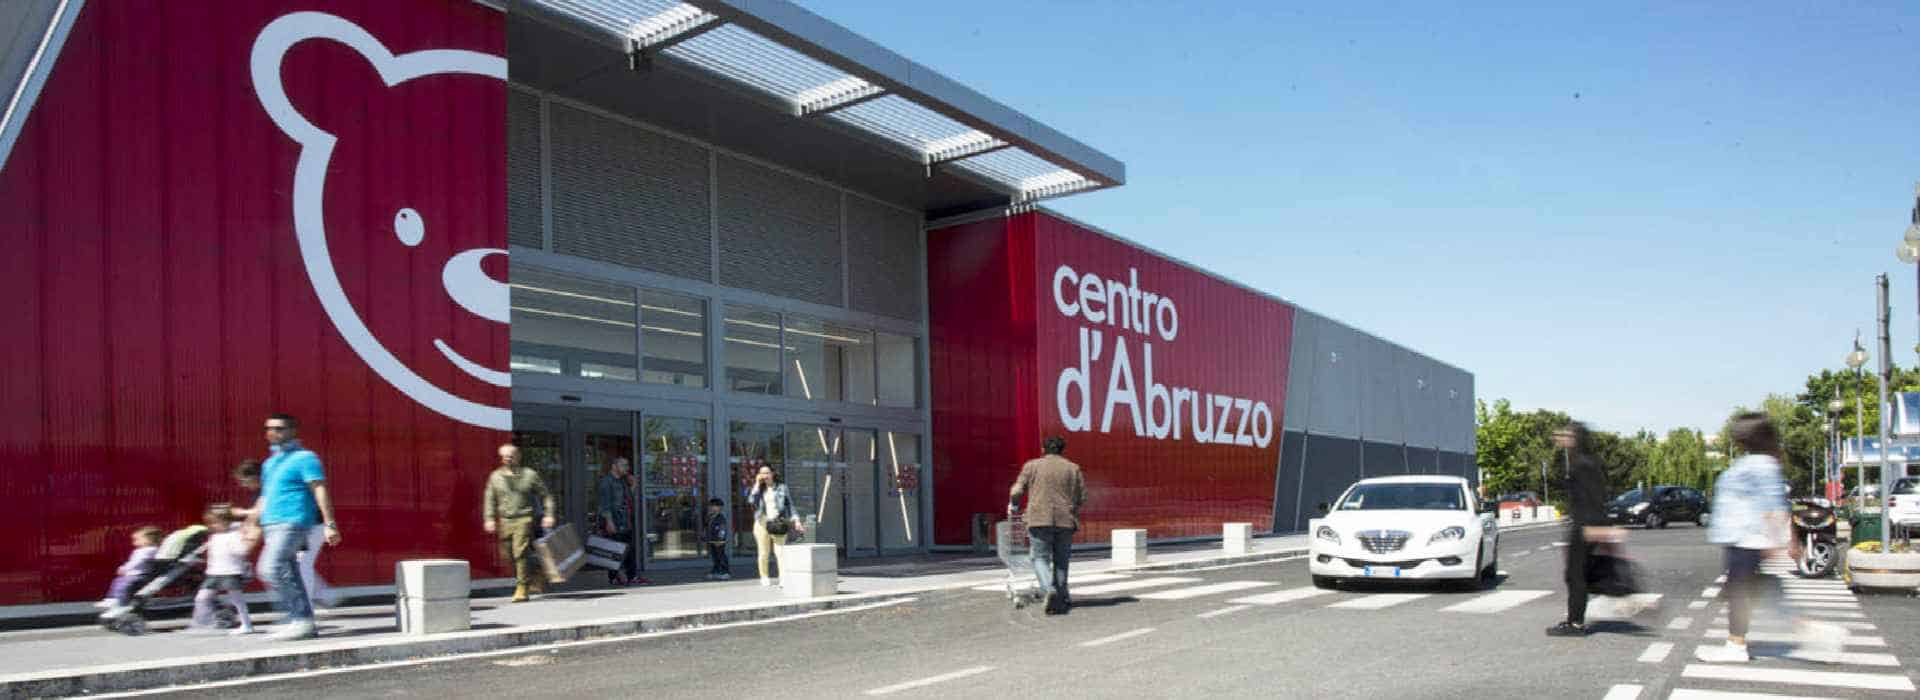 Coronavirus, in piena epidemia la Coop "Centro d'Abruzzo" inaugura "Happy Casa Store"